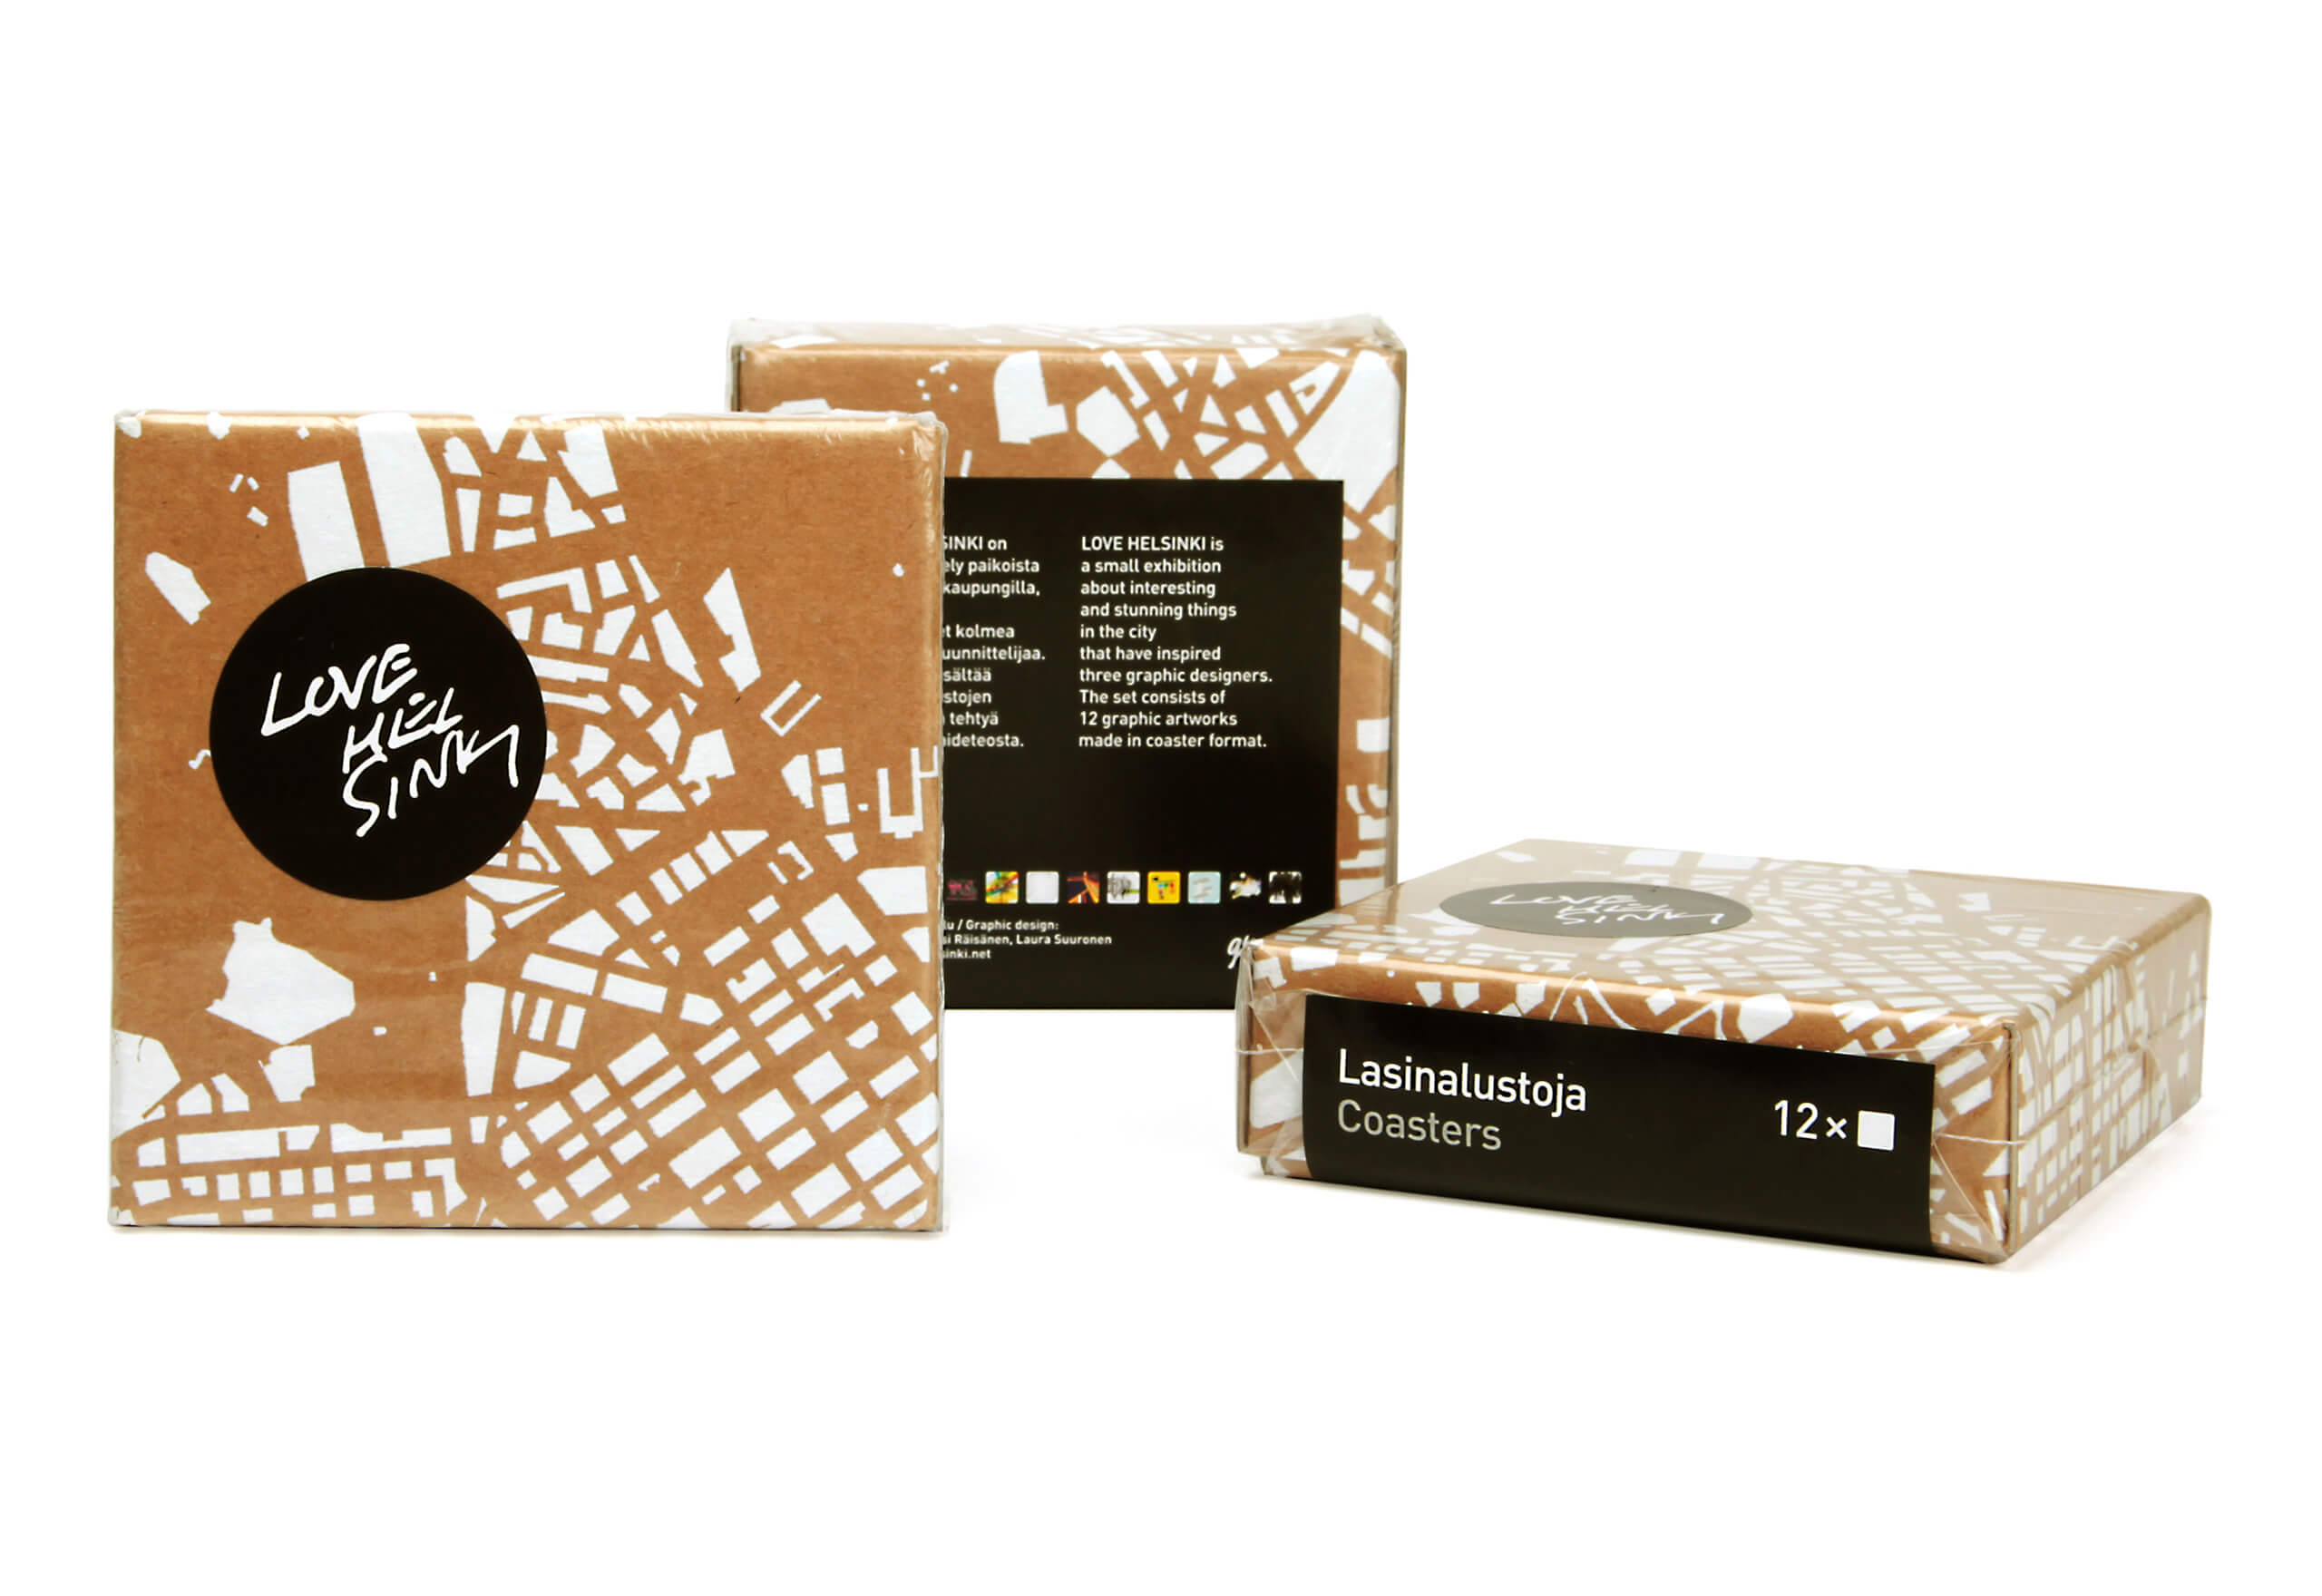 Laura-Suuronen-Love-Helsinki-Packaging-2560